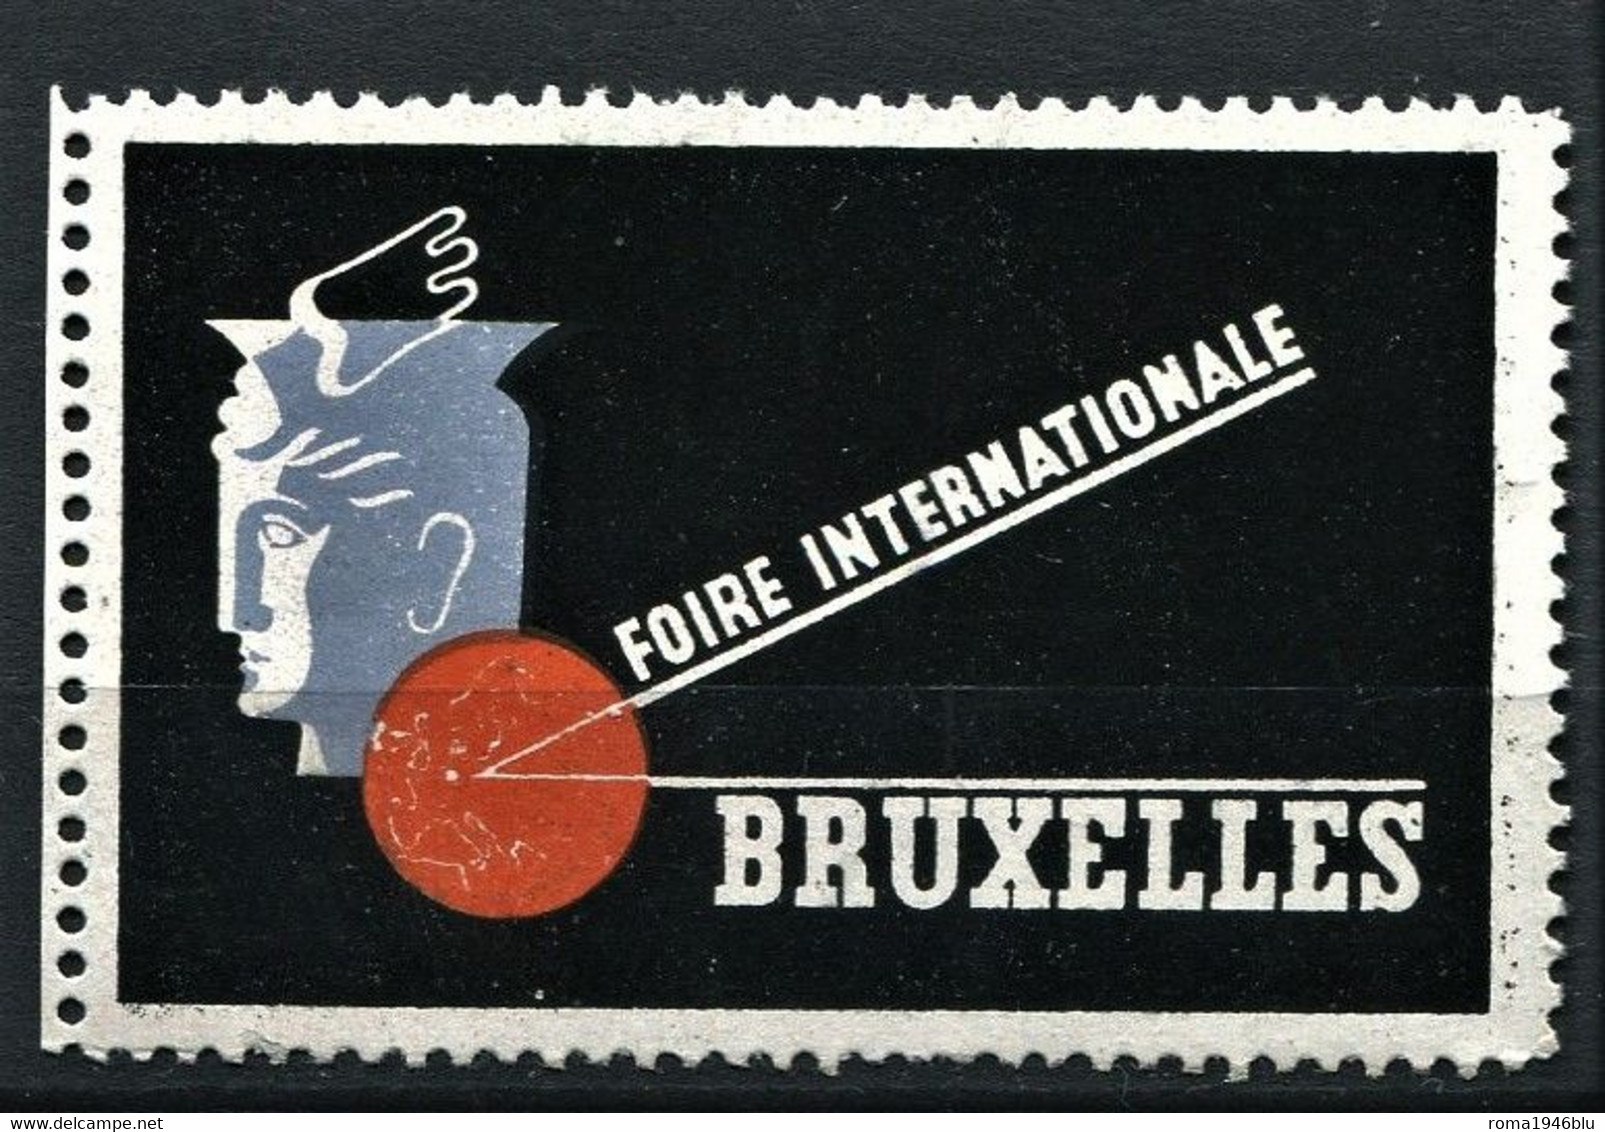 BRUXELLES FOIRE INTERNATIONALE - Erinnophilie